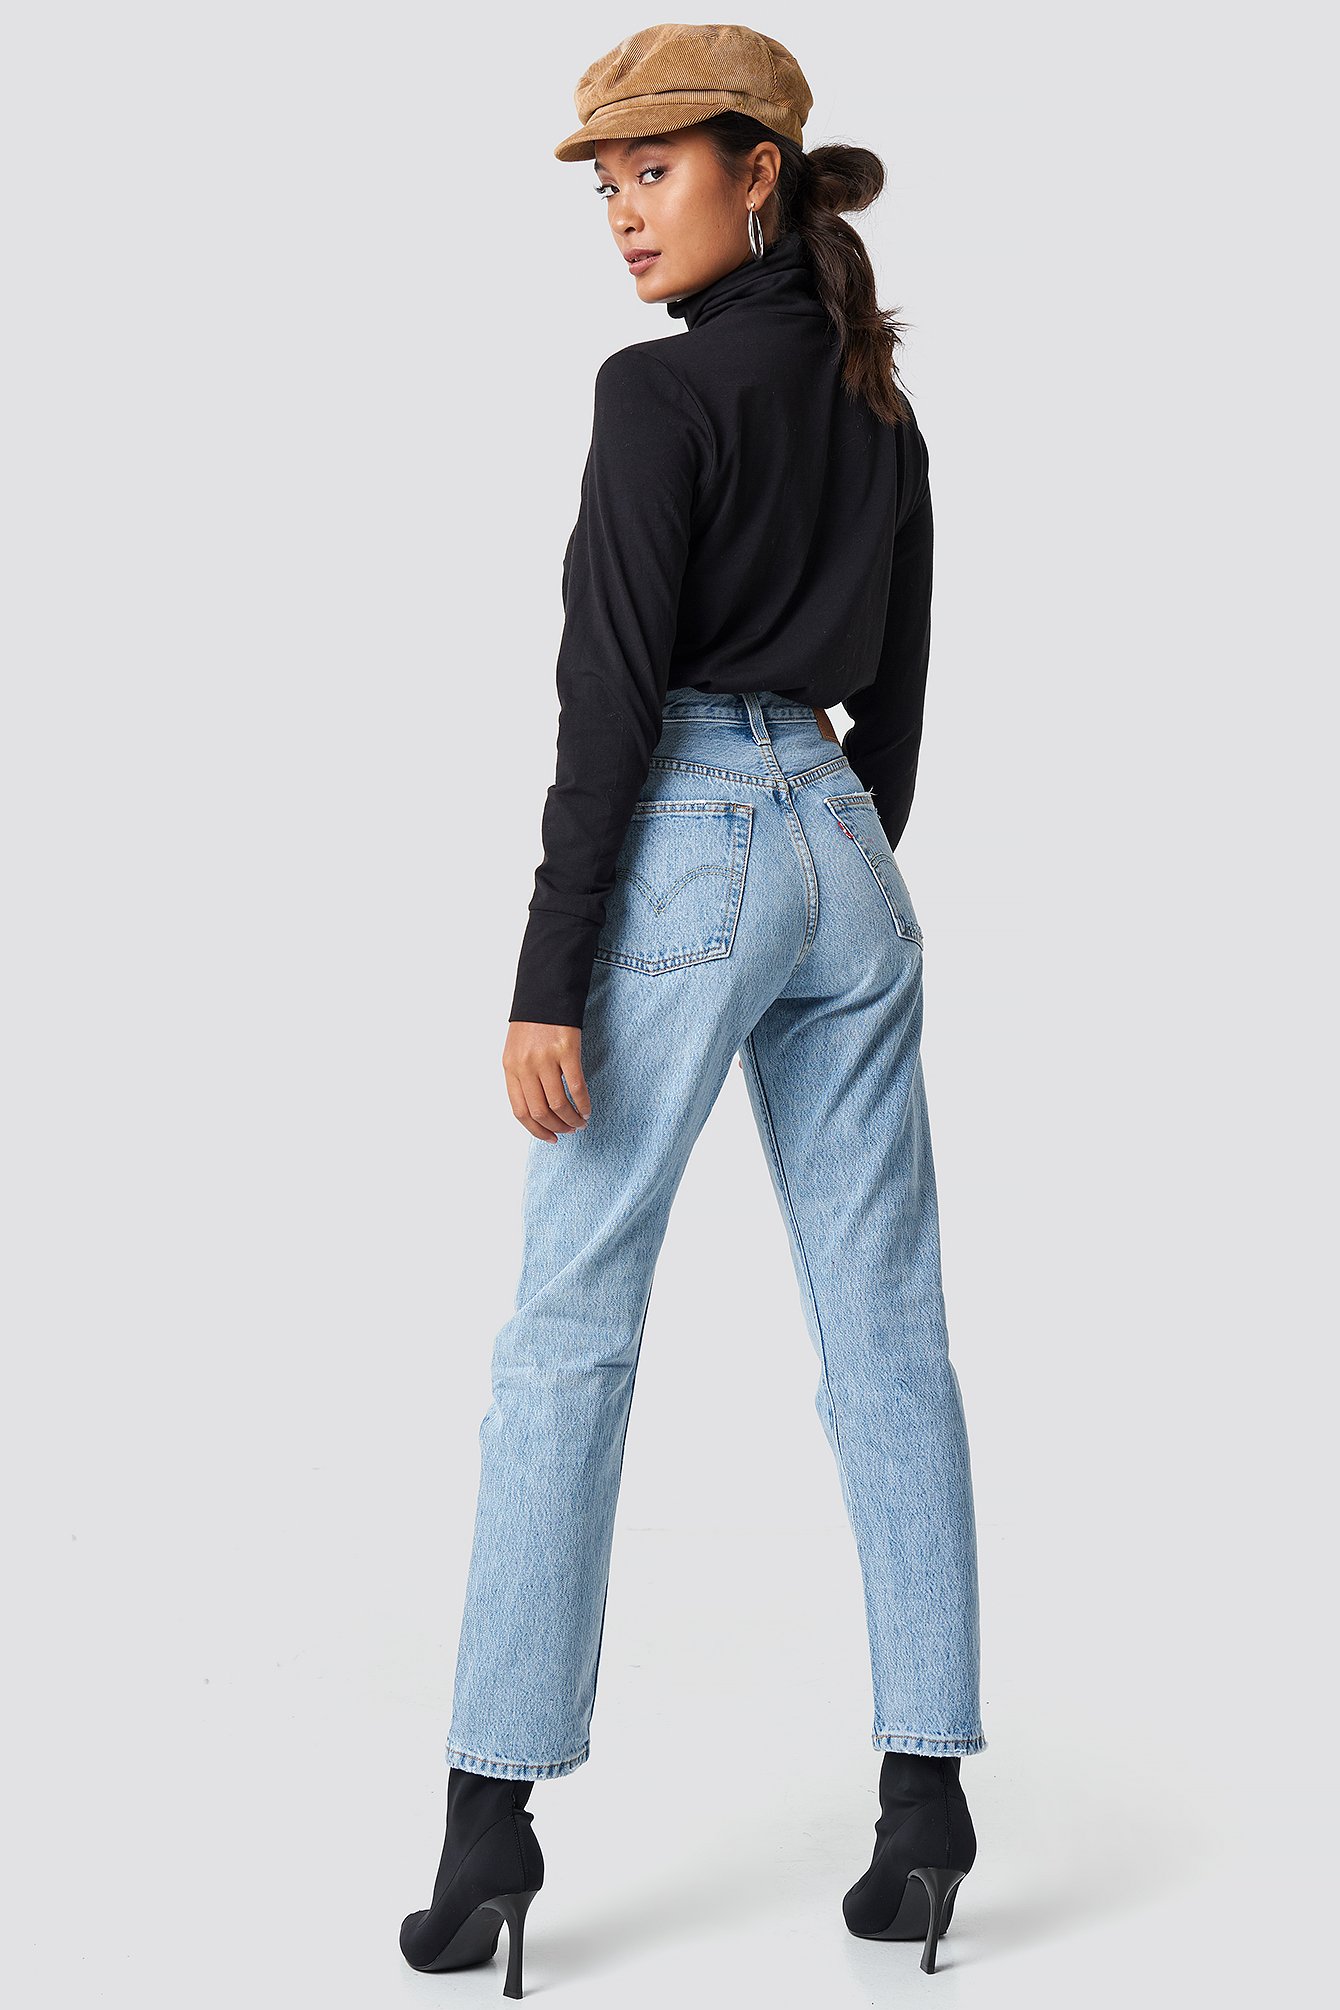 jeans levis 501 crop